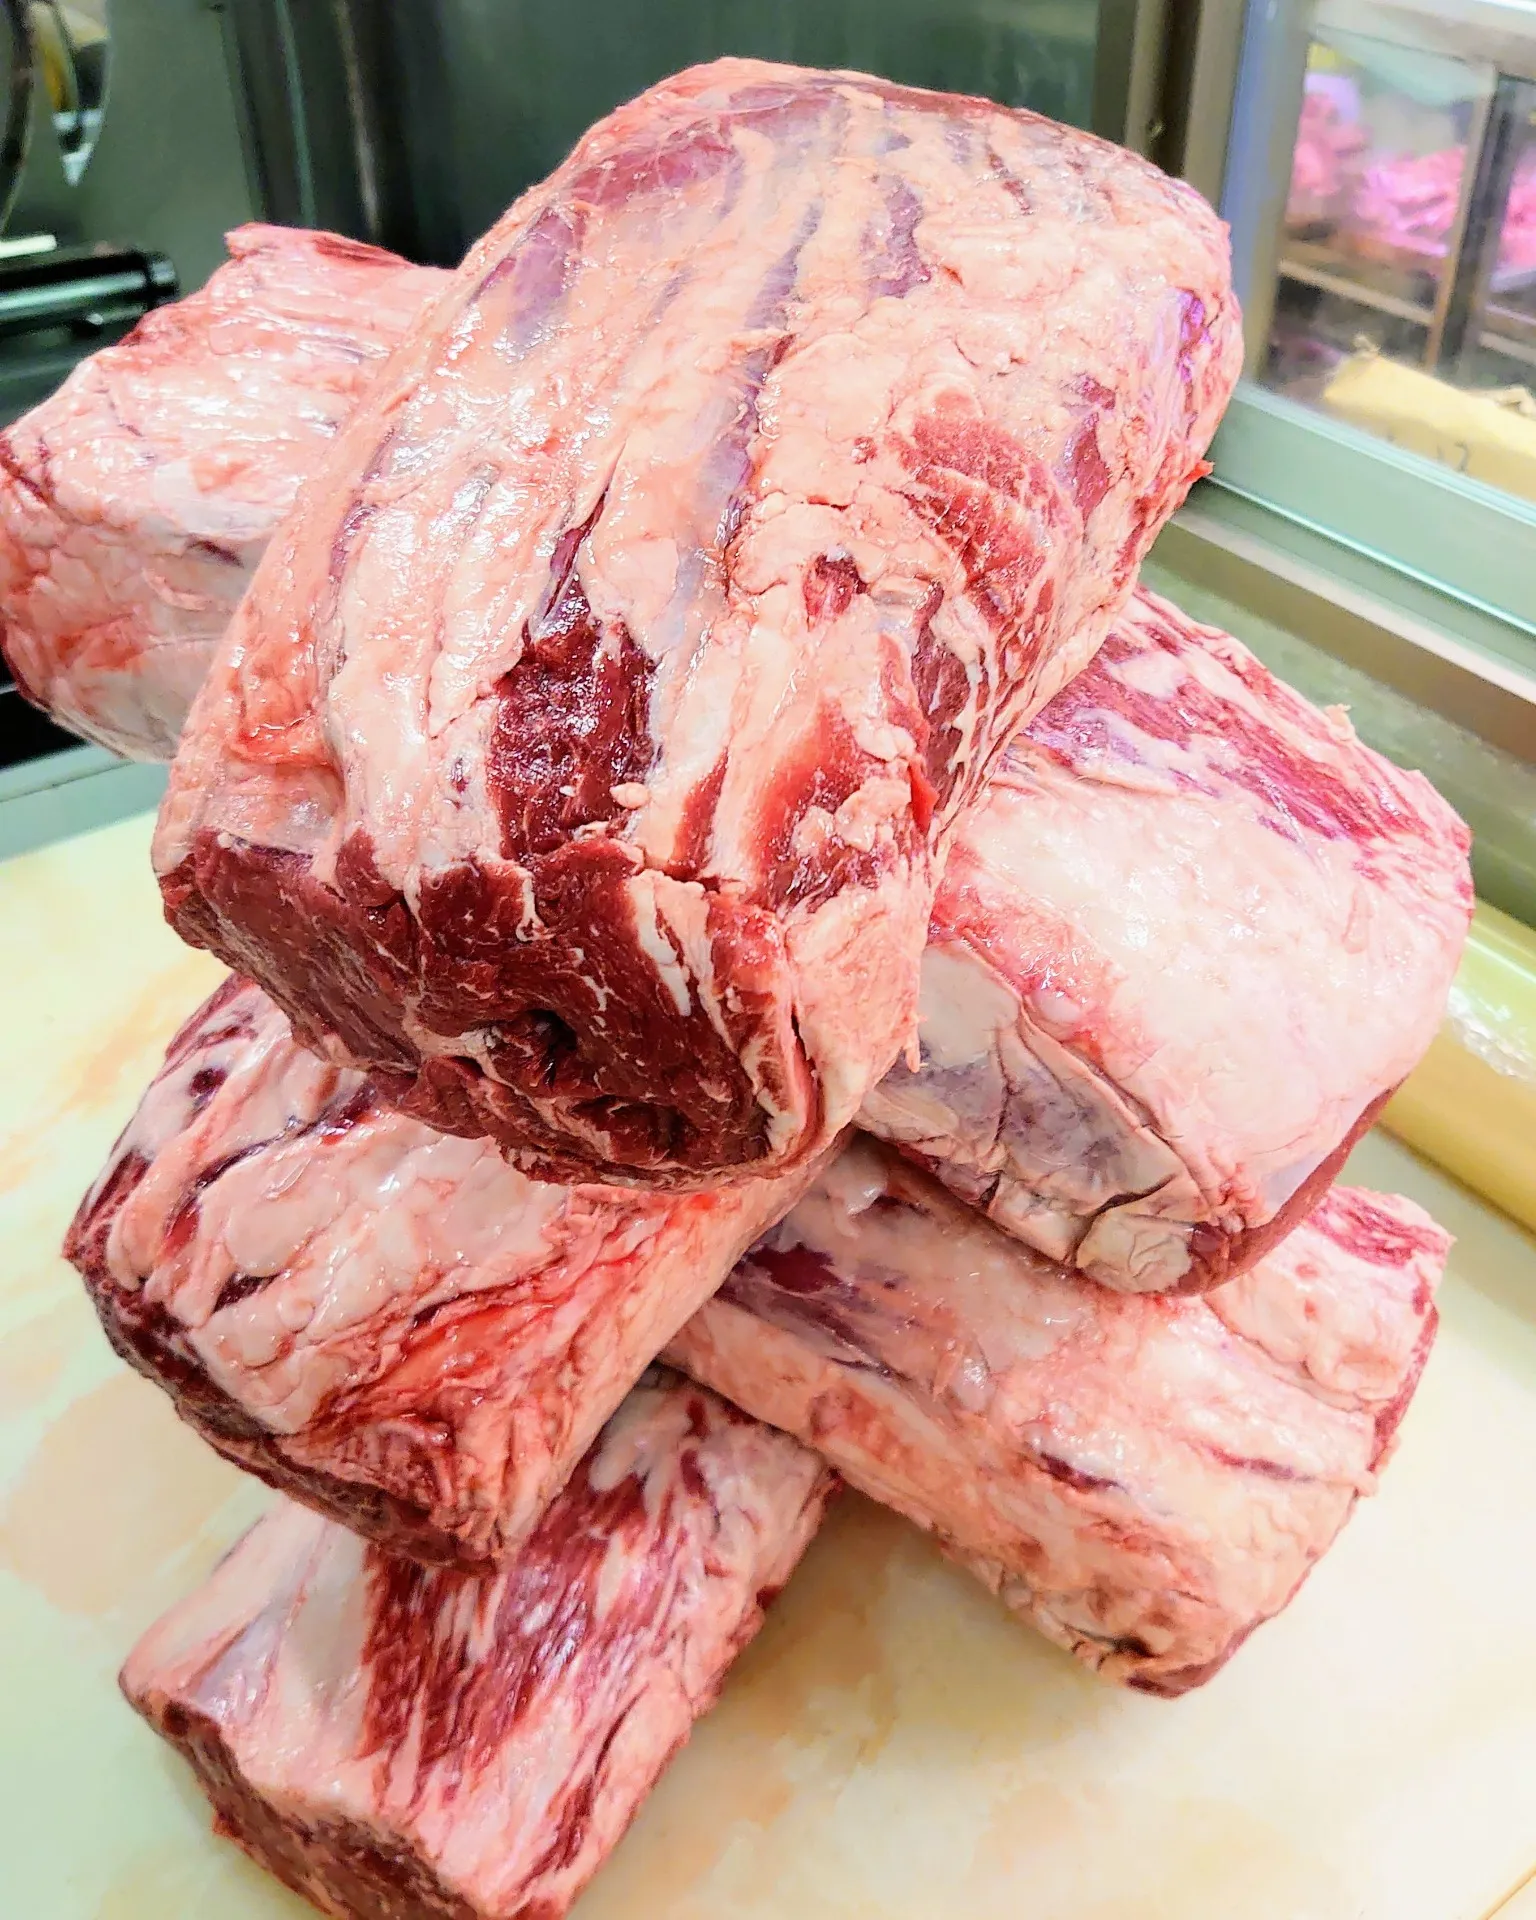 世田谷のオンライン輸入牛専門肉屋で営業中なのでホームページをご覧になってください！一般には出回っていない美味しい輸入牛ですよ！